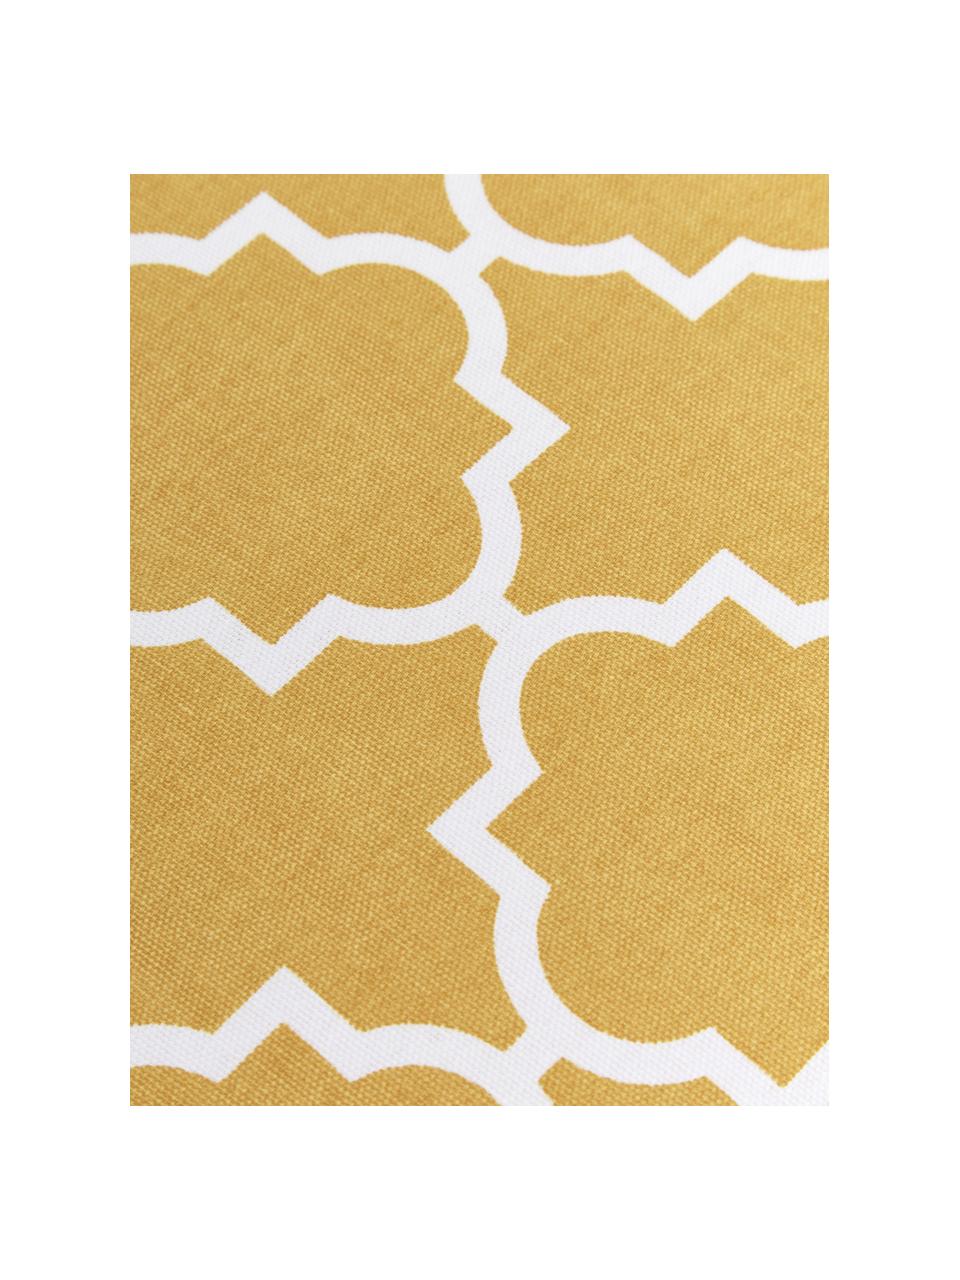 Kissenhülle Lana mit grafischem Muster, 100% Baumwolle, Senfgelb, Weiß, B 45 x L 45 cm